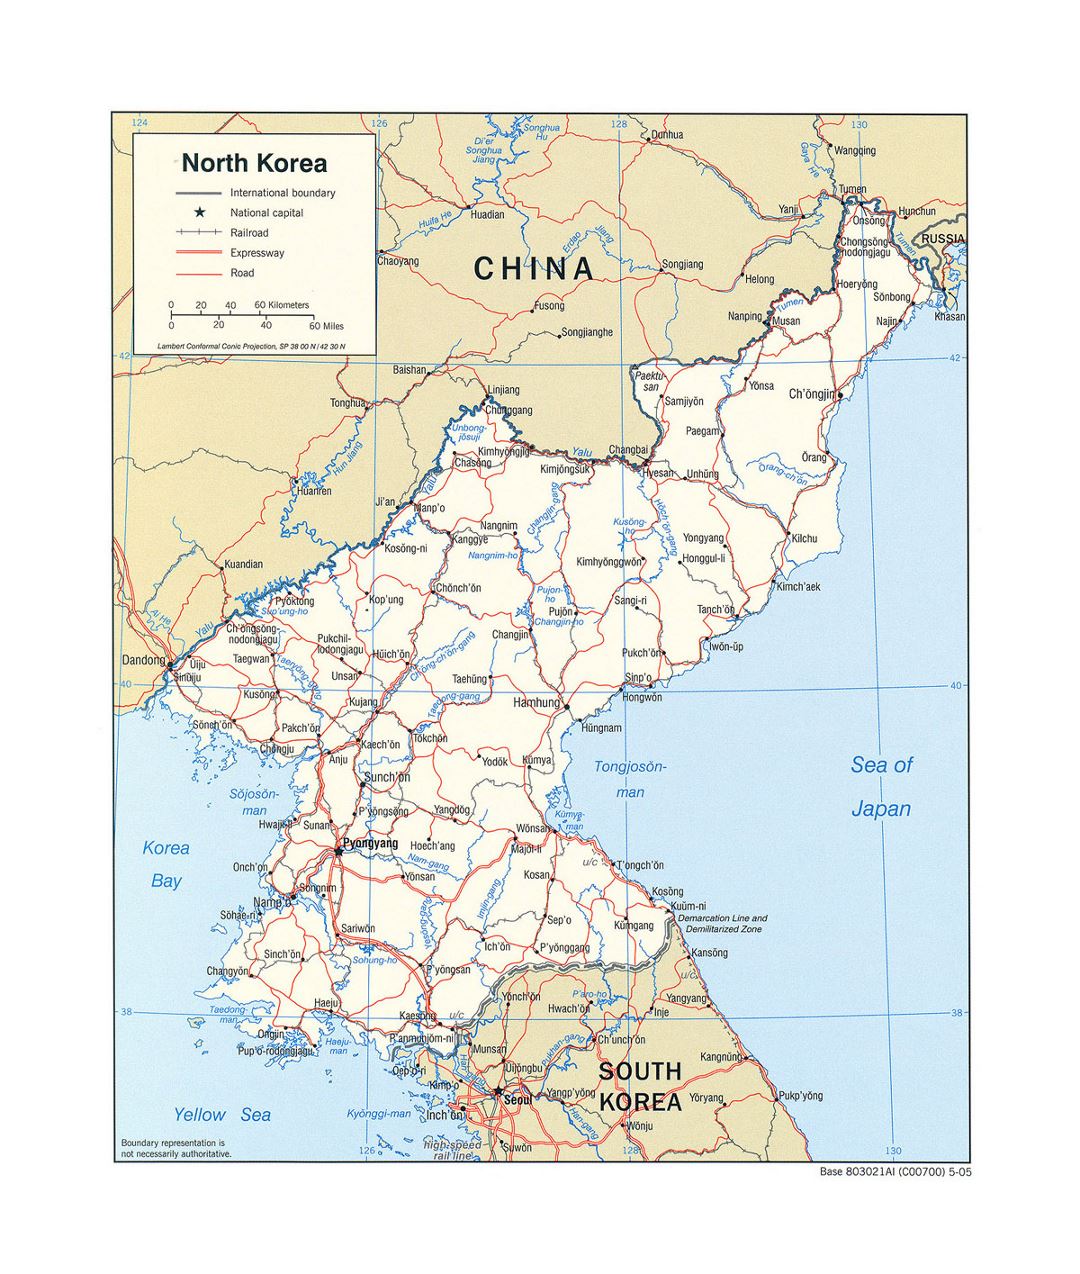 Detallado mapa político de Corea del Norte con carreteras, ferrocarriles y principales ciudades - 2005